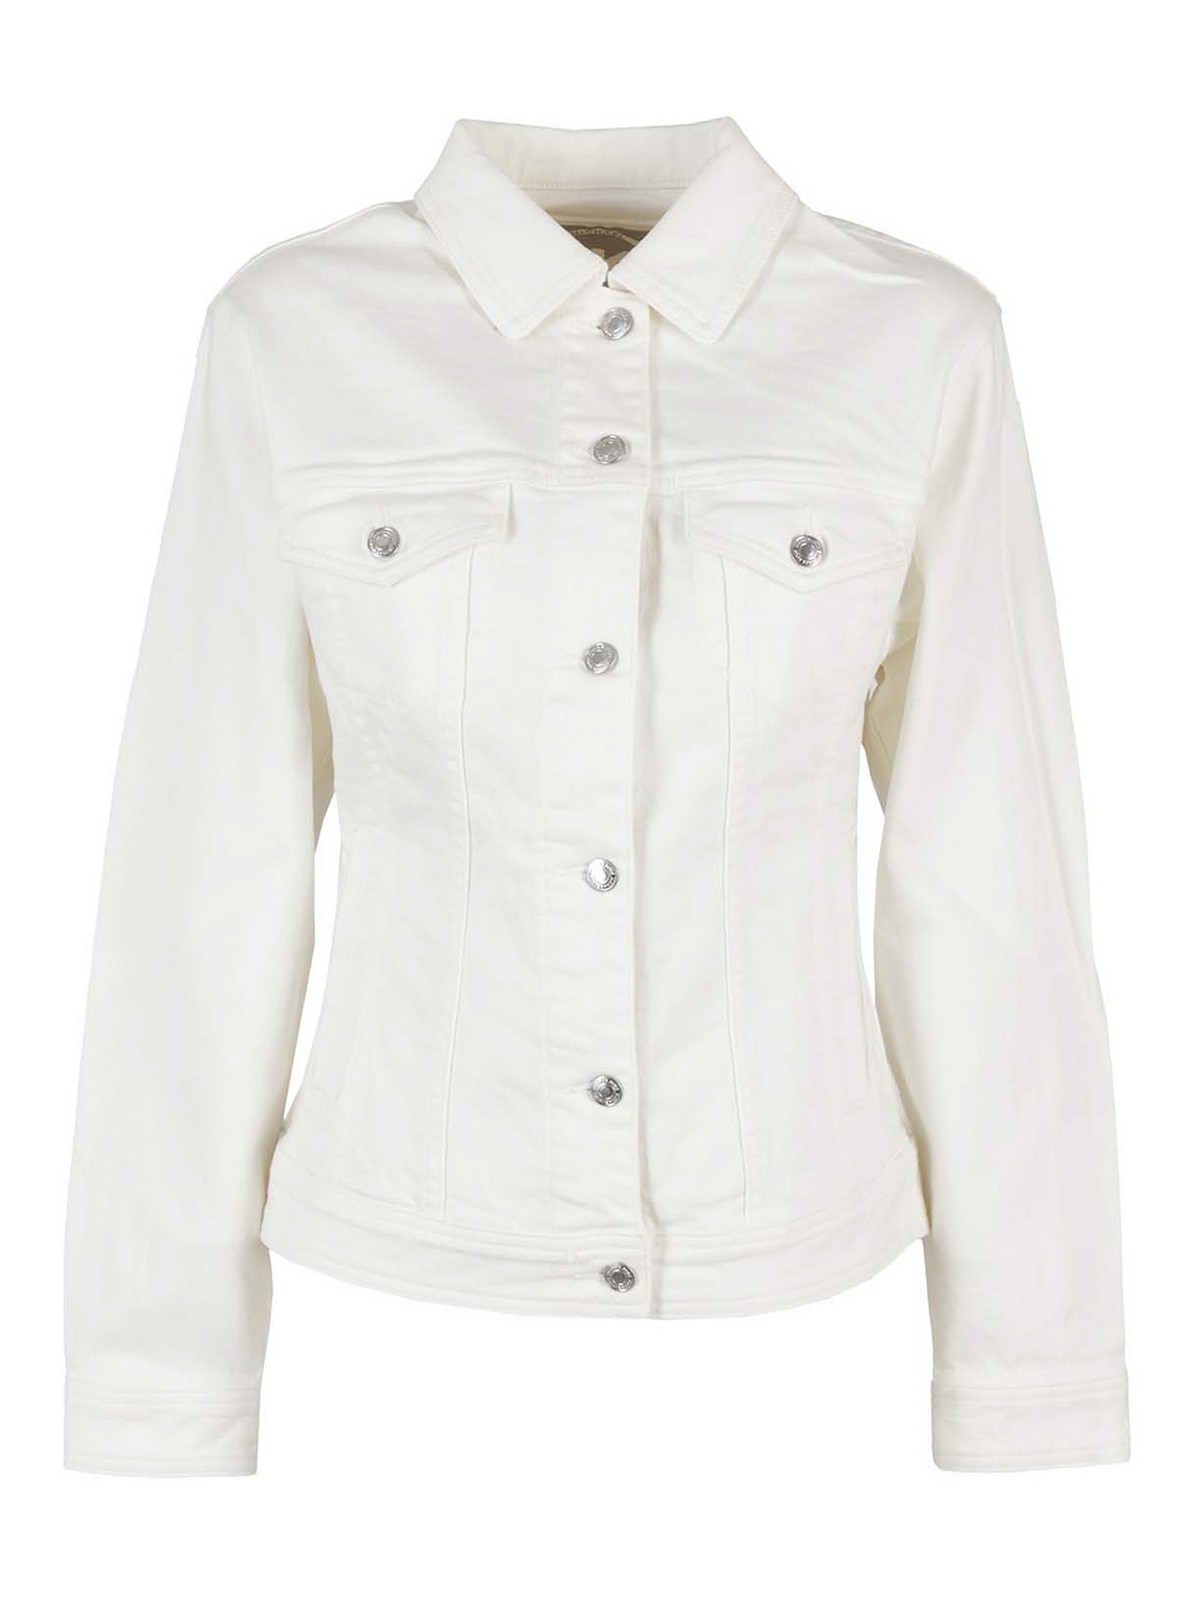 Denim jacket Michael Kors - White denim jacket - MS1100IBUG100 | iKRIX.com